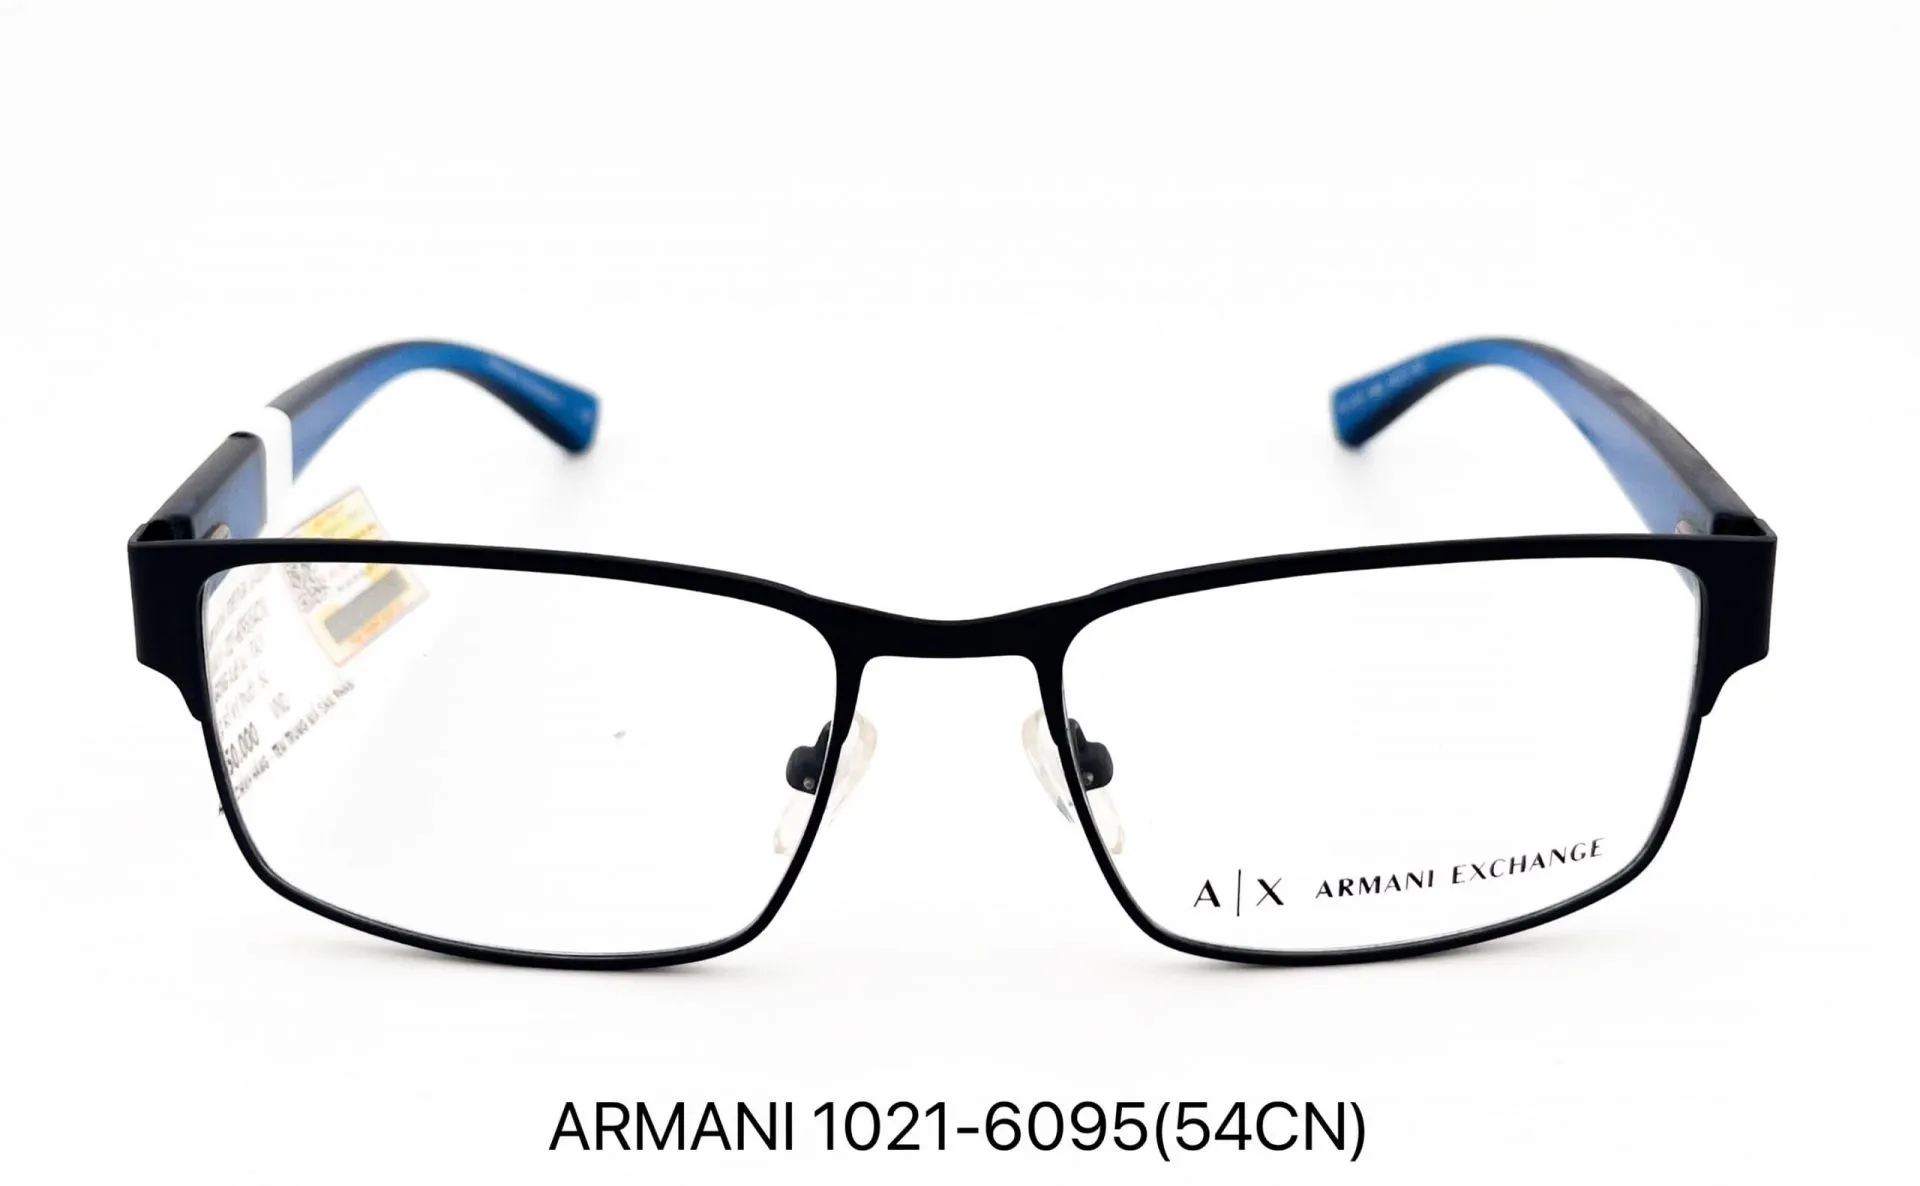 Gọng kính ARMANI EXCHANGE 1021-6095 (54CN)